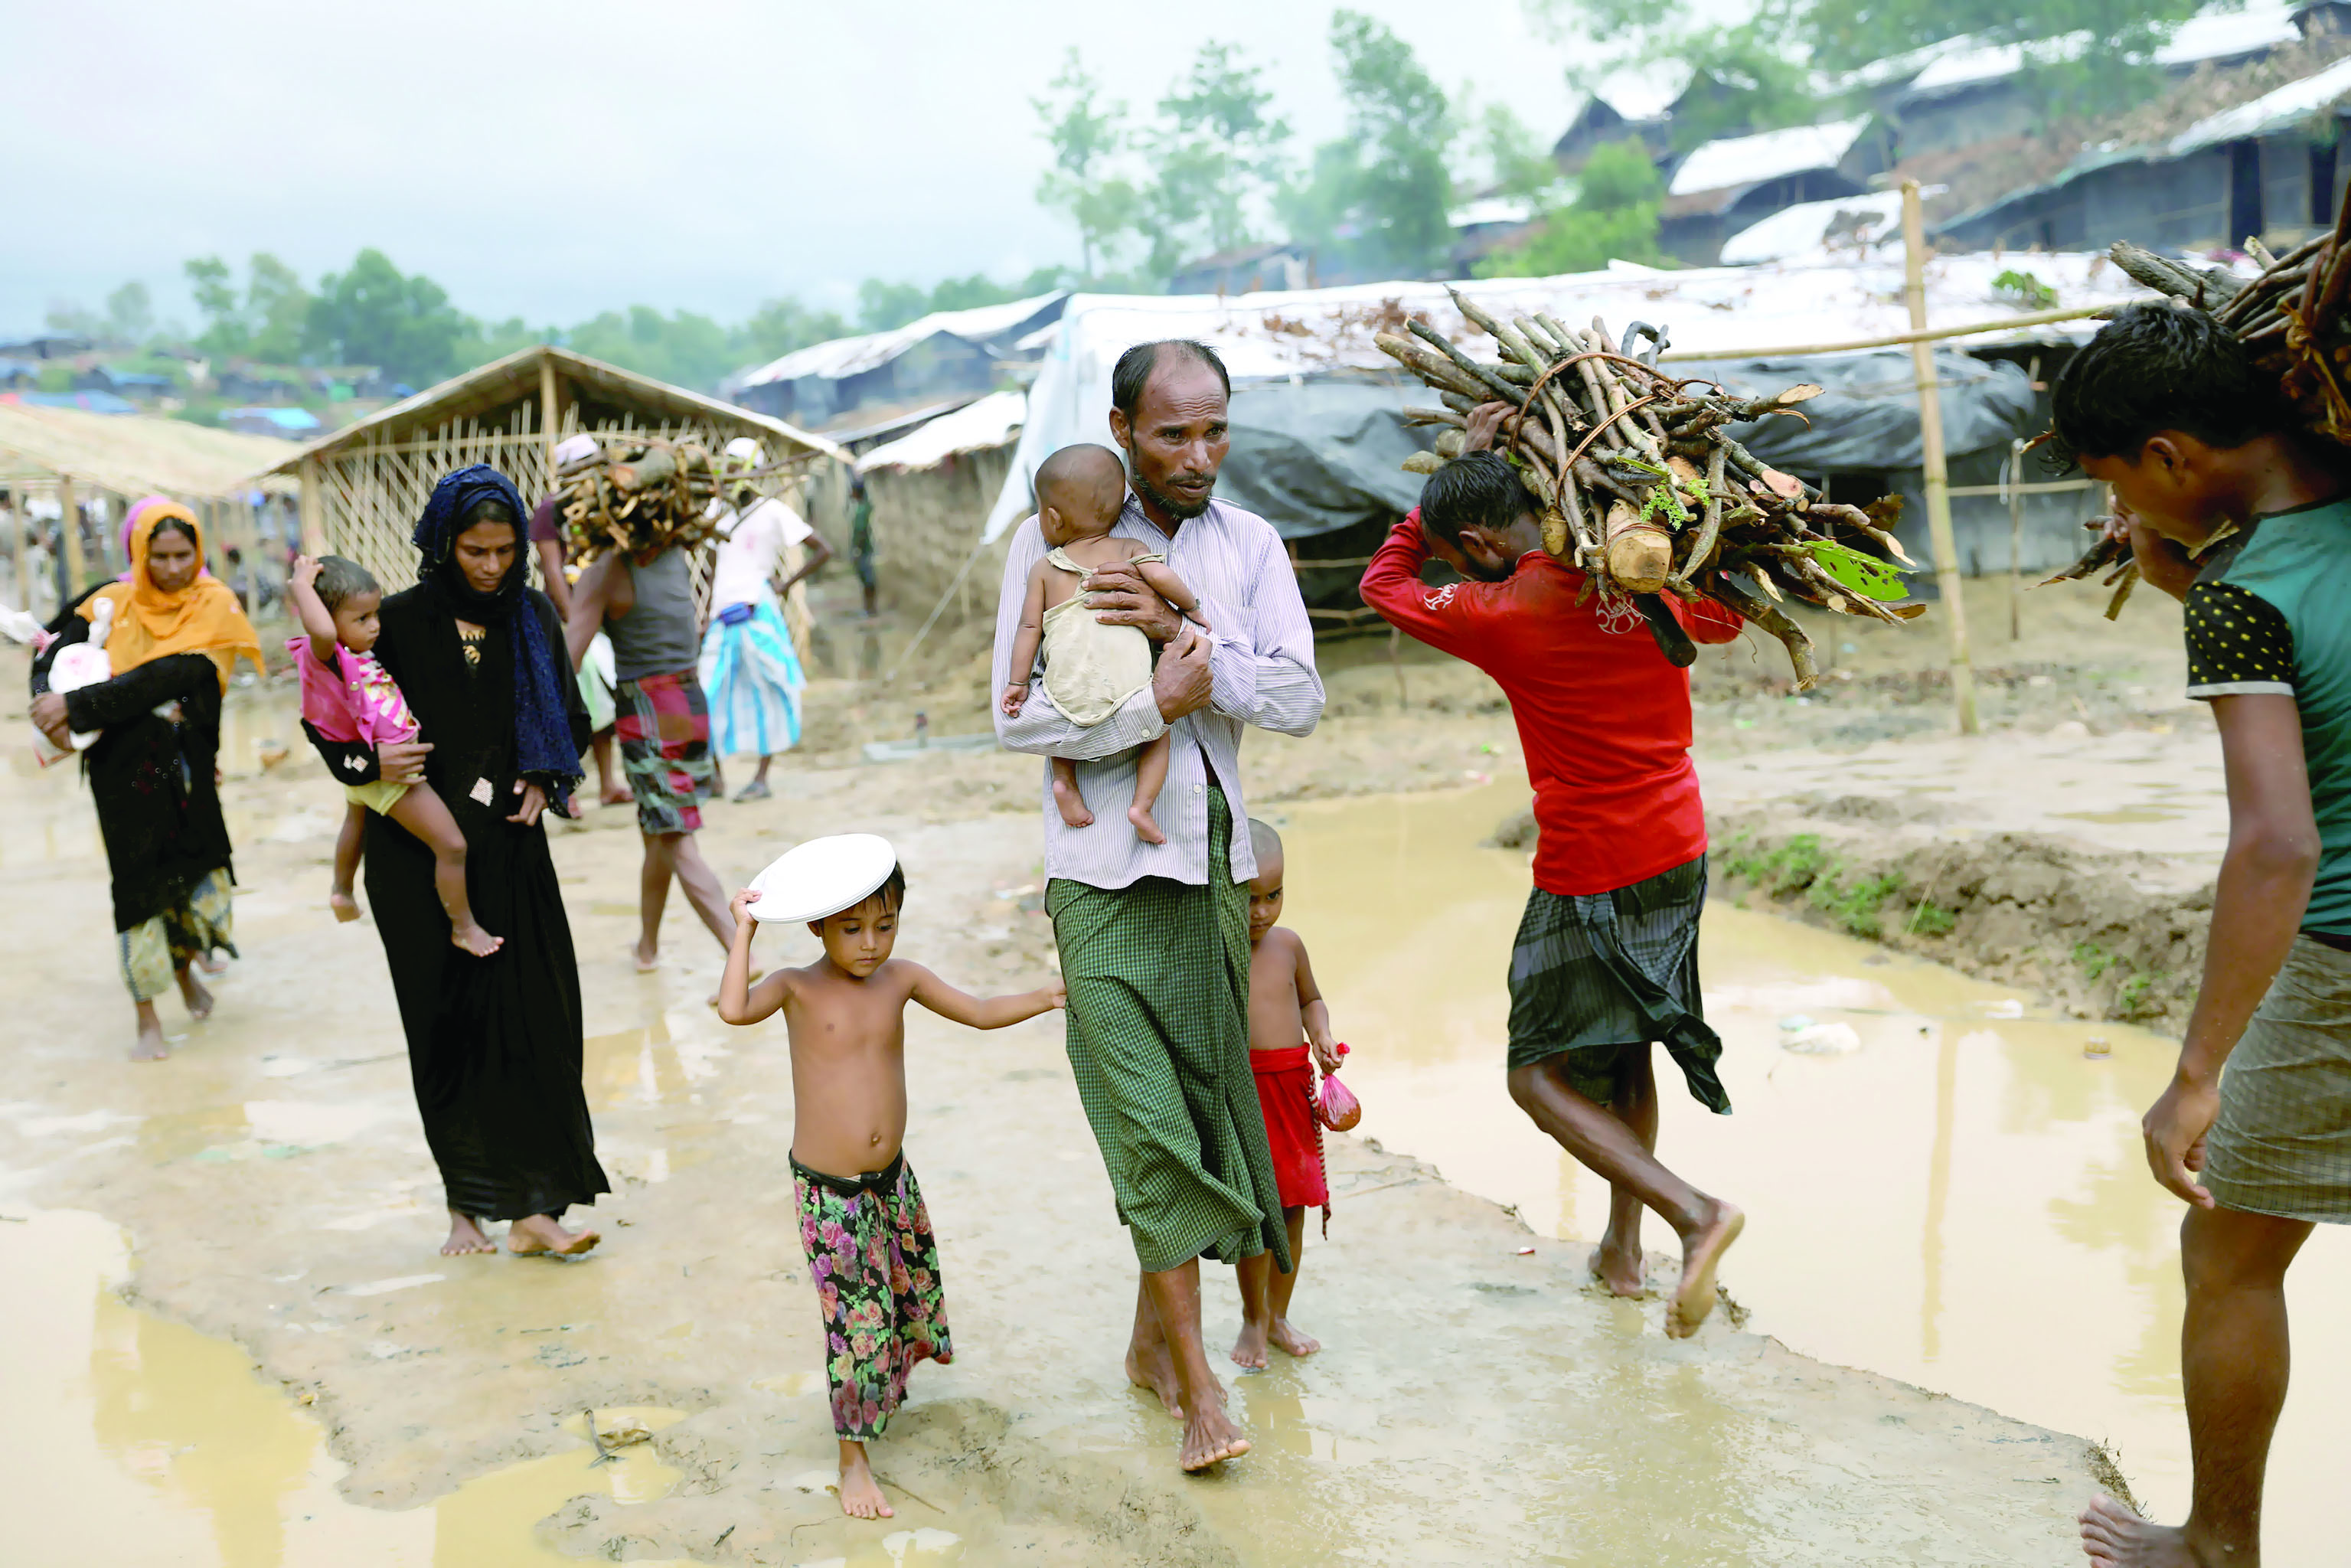 متمردو الروهينجا مستعدون للاستجابة 


هل تتجه حكومة بورما نحو السلام؟